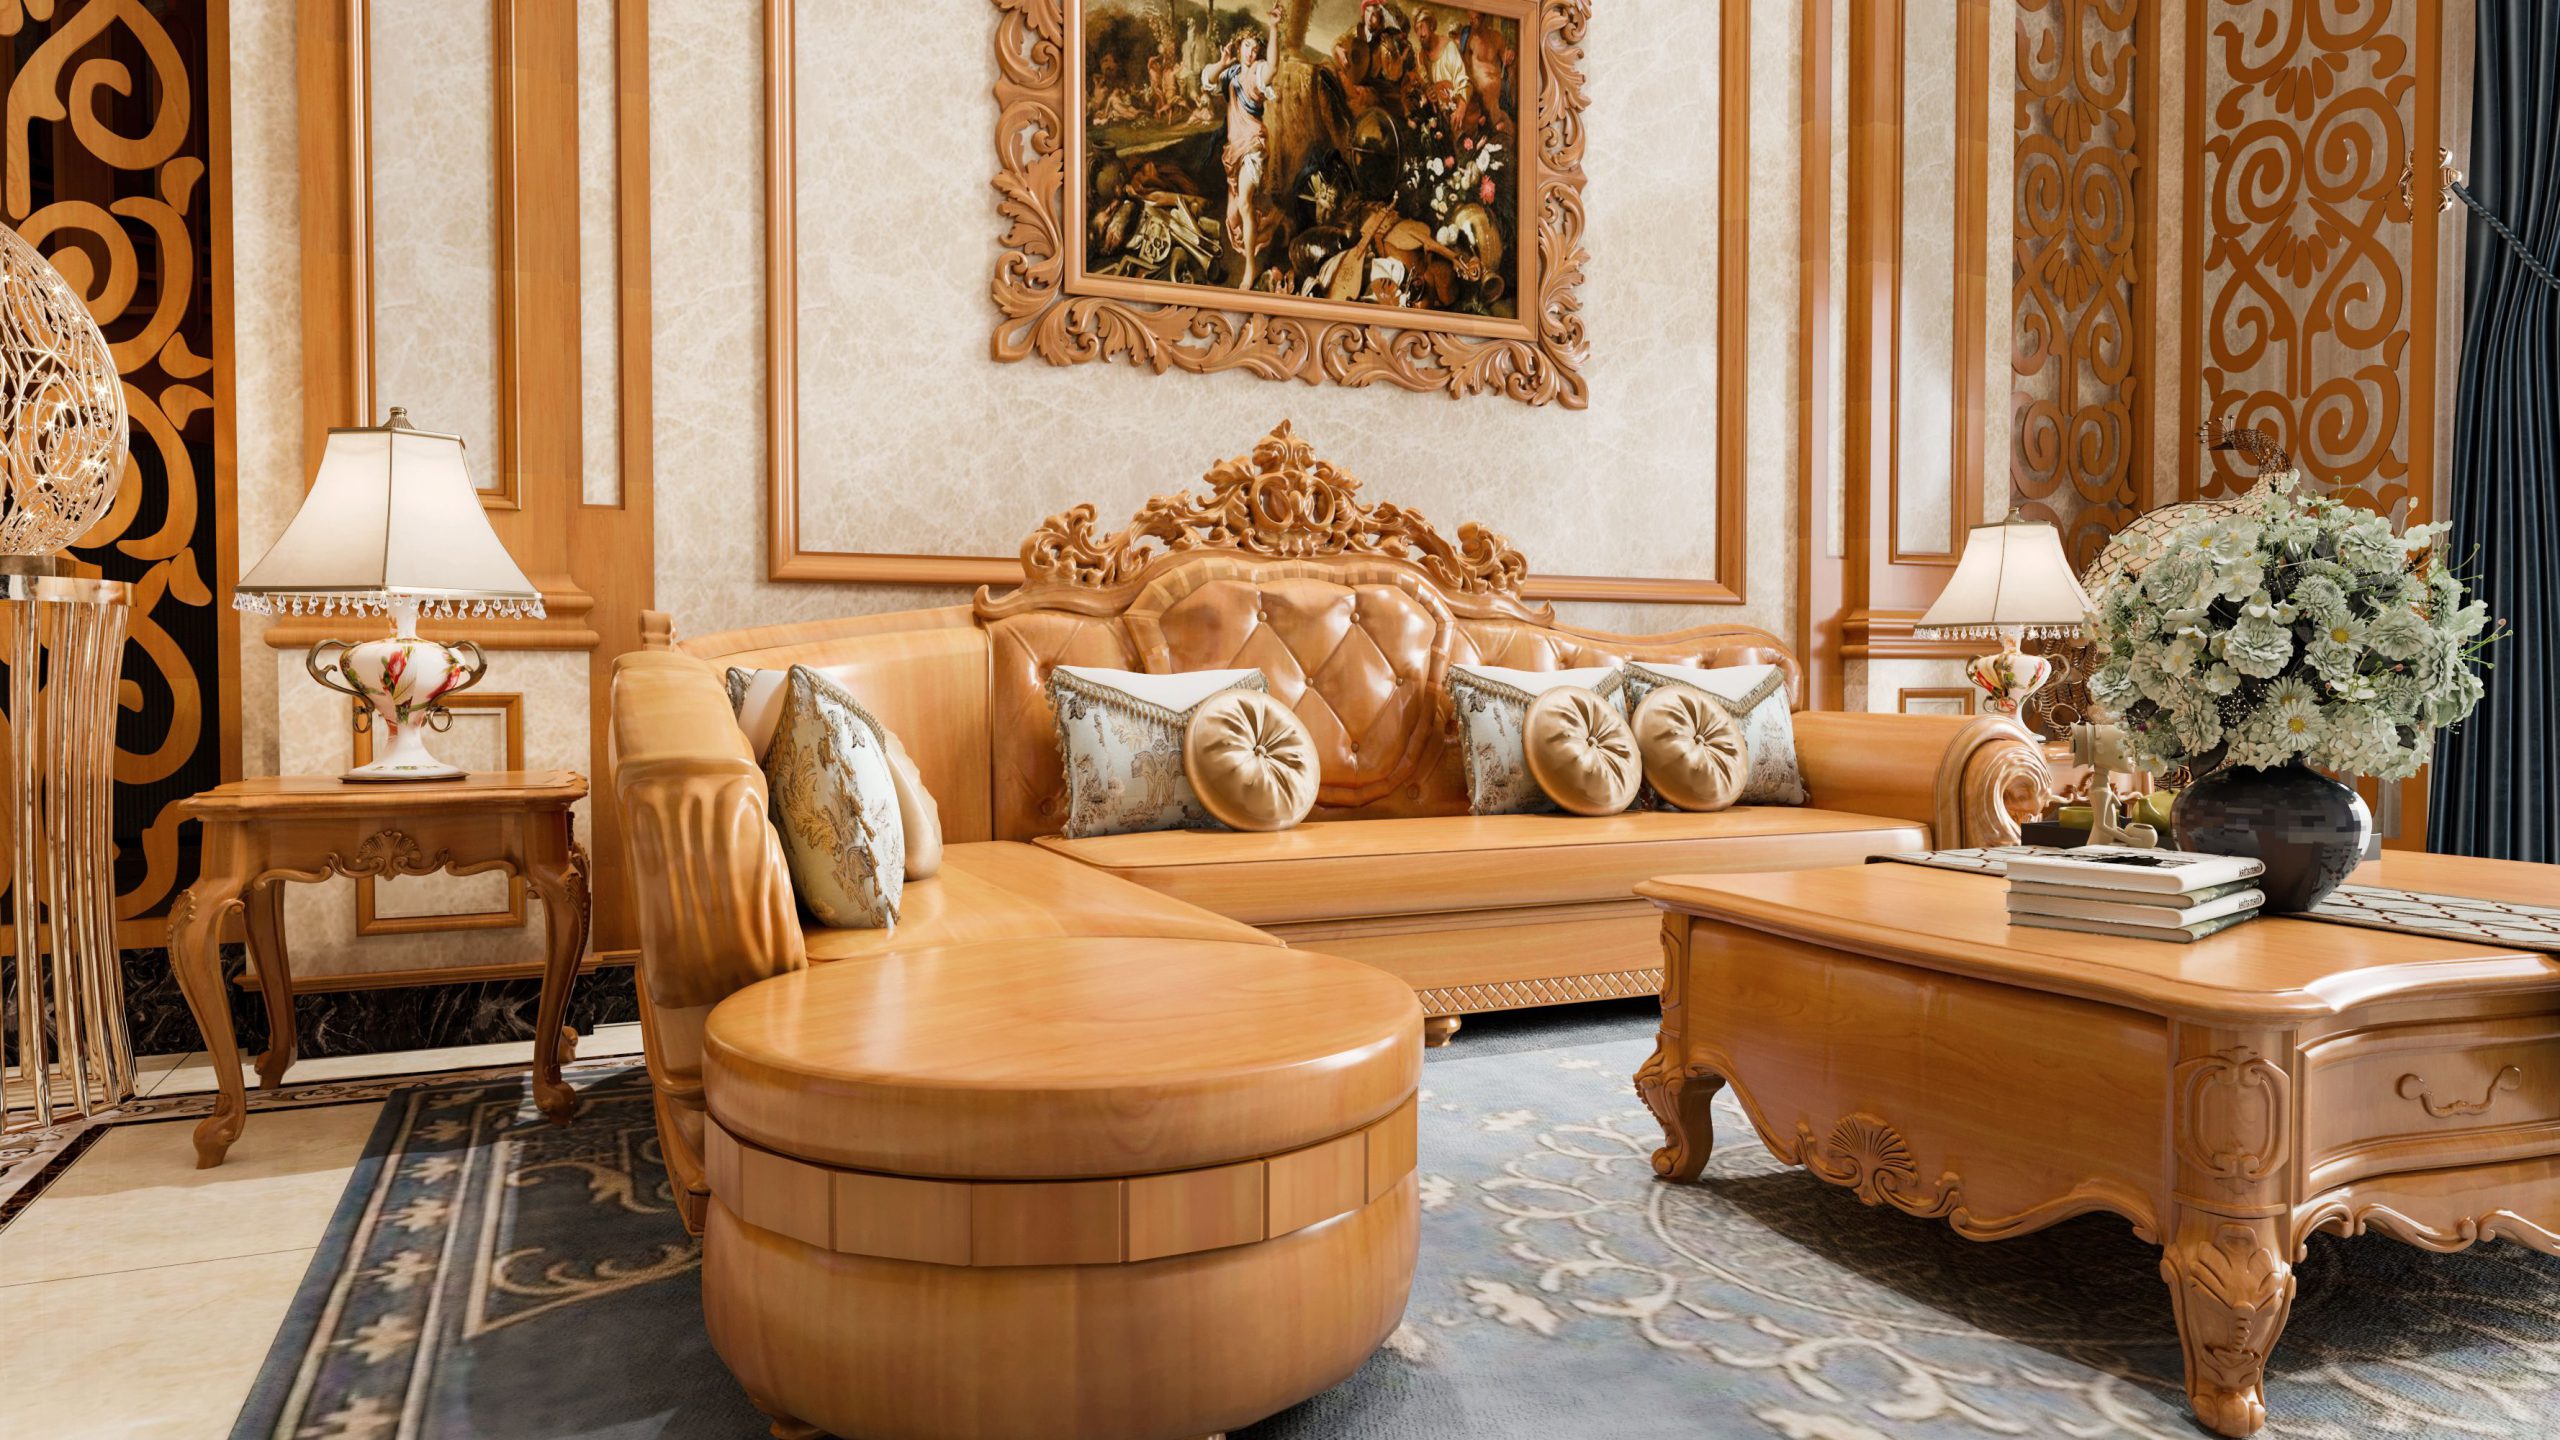 Sofa gỗ phong cách tân cổ điển được bố trí hài hòa với không gian